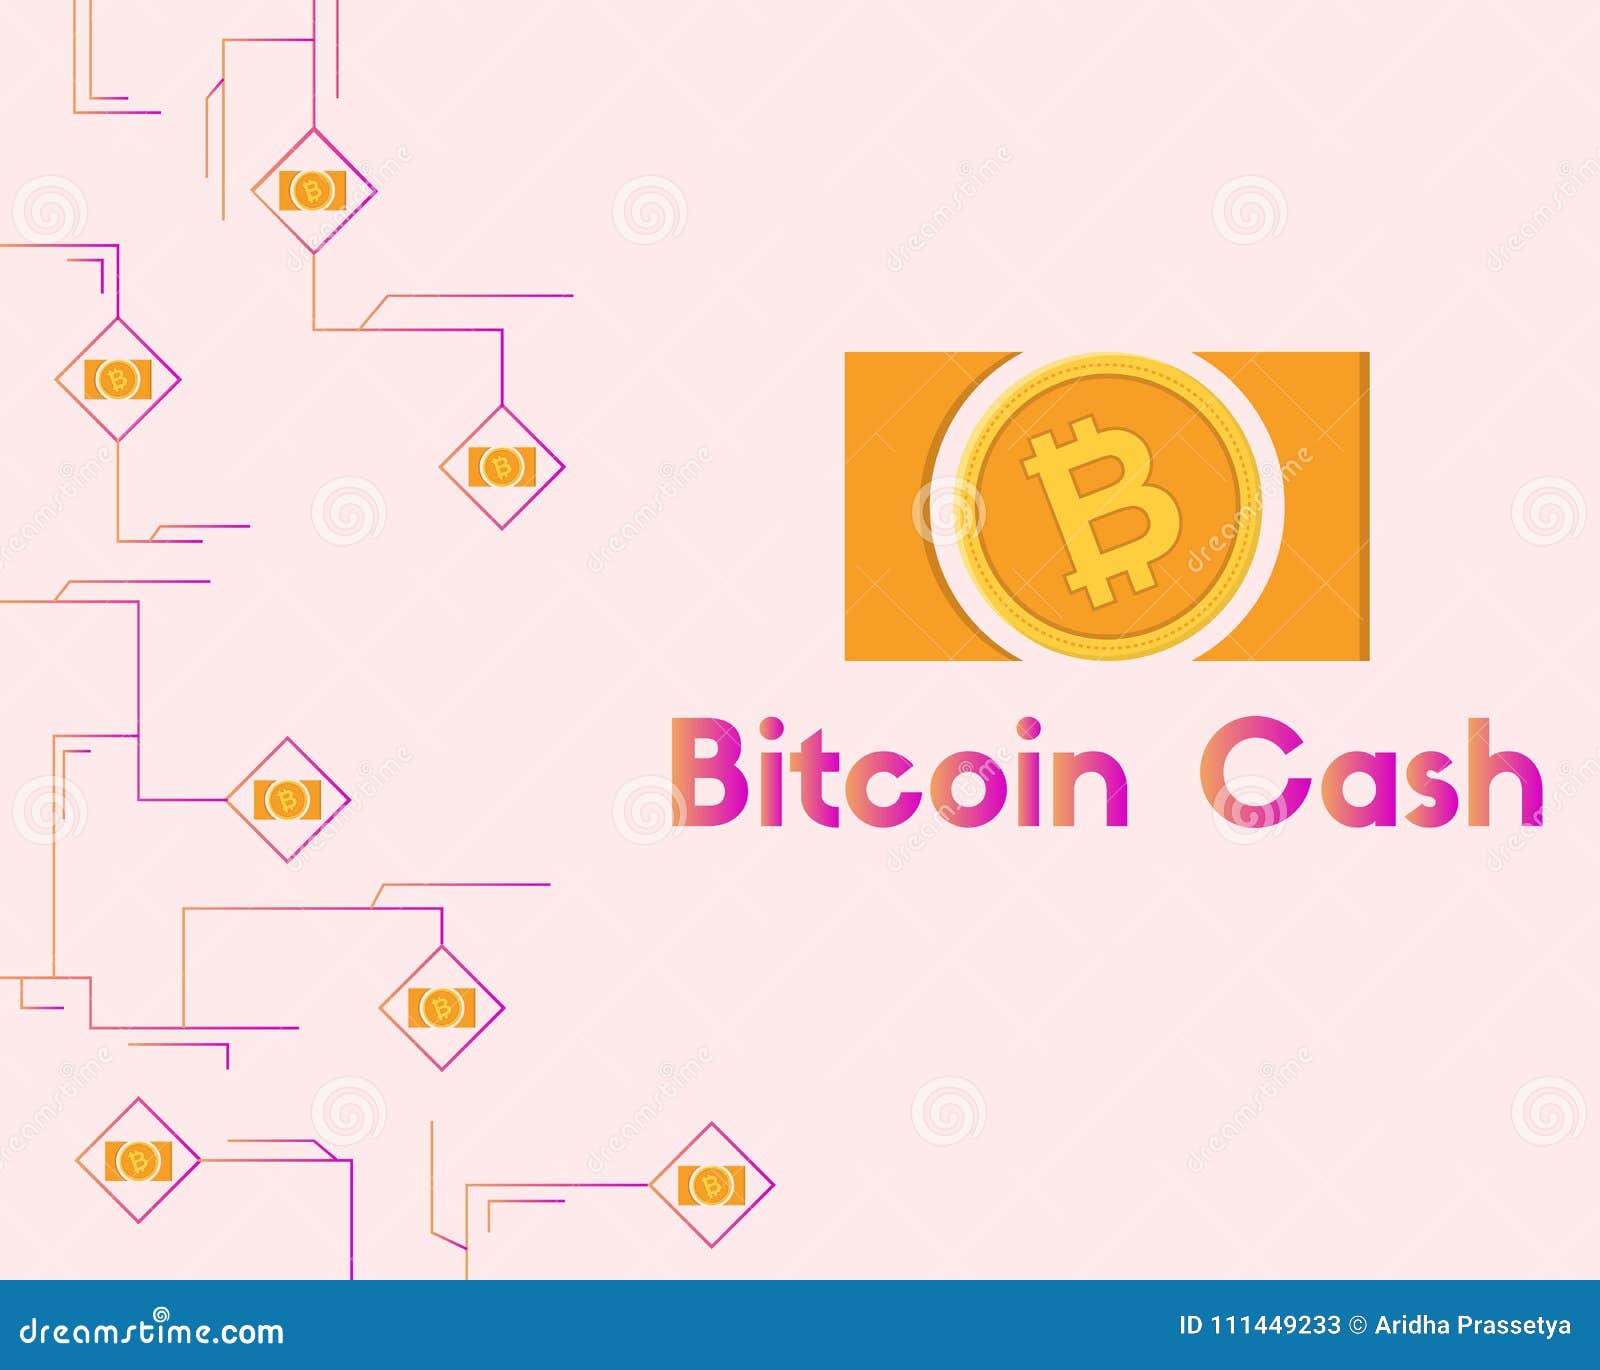 blockchain com bitcoin cash